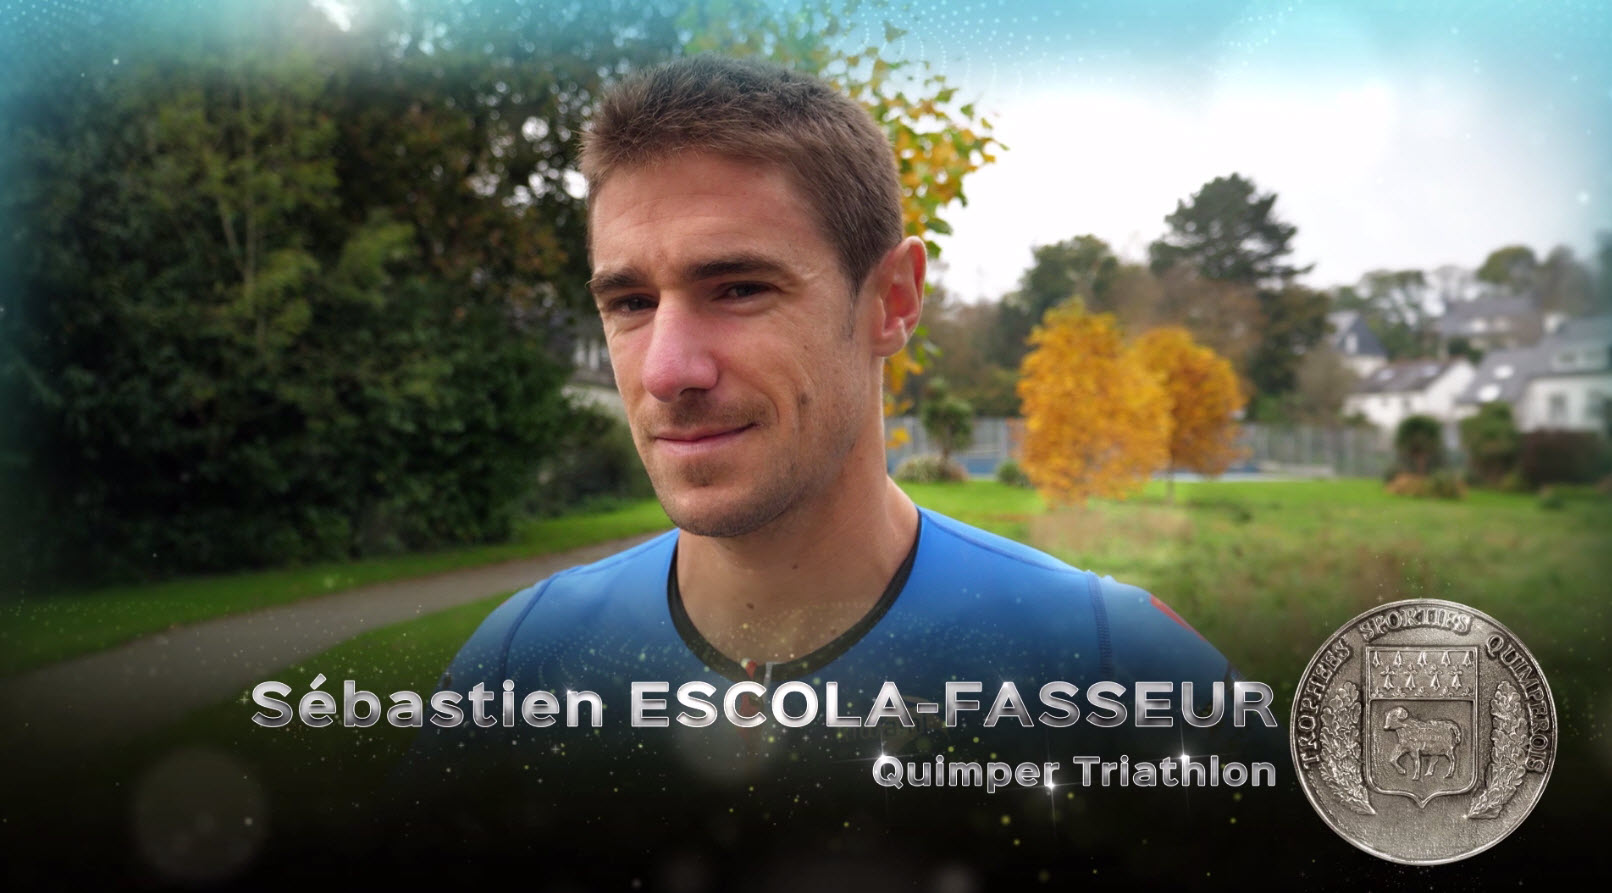  Trophées sportifs 2017 : Sébastien Escola-Fasseur, sportif de l'année